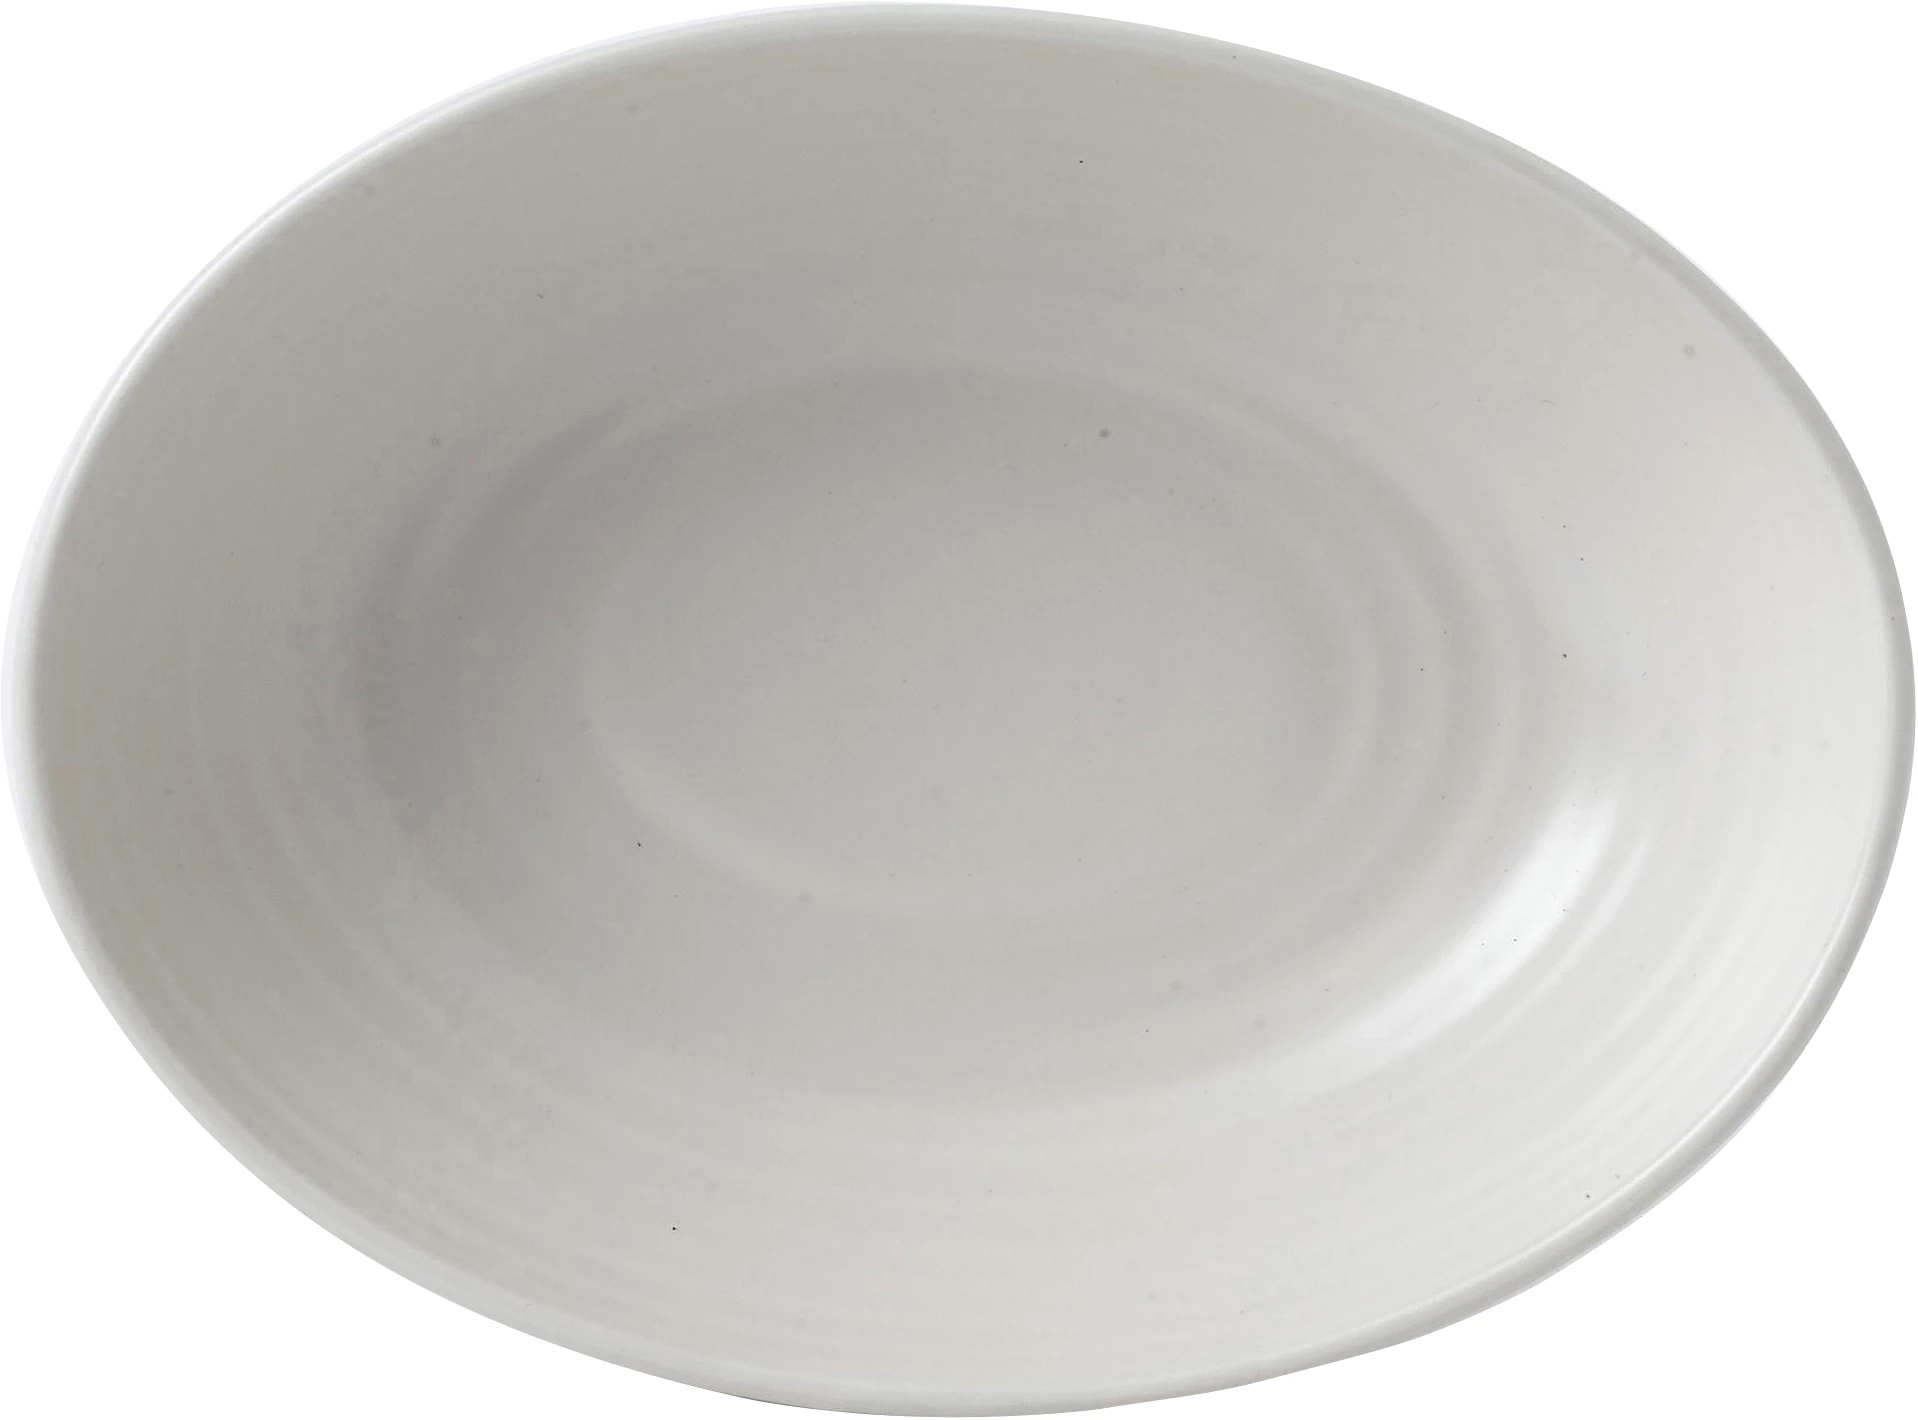 Dudson Evo Pearl skål, oval, hvid, 21,6 x 16,4 cm